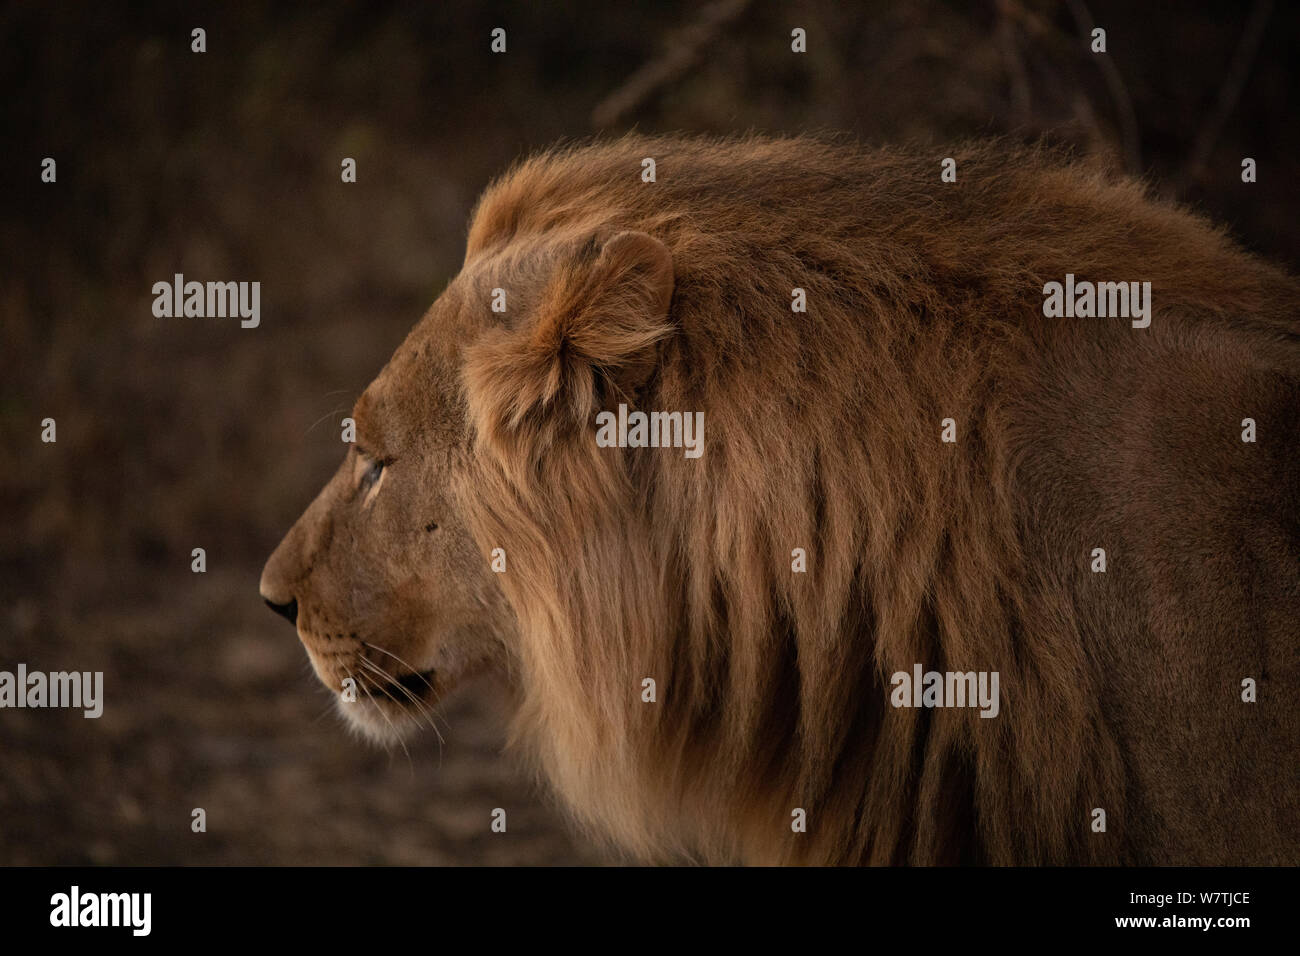 Lion Portrait in Südafrika, Madikwe Safari Pirschfahrt. Es war in der Goldenen Stunden genommen, 3 Brüder auf der Bewegung für die Mahlzeit. Headshot. Stockfoto